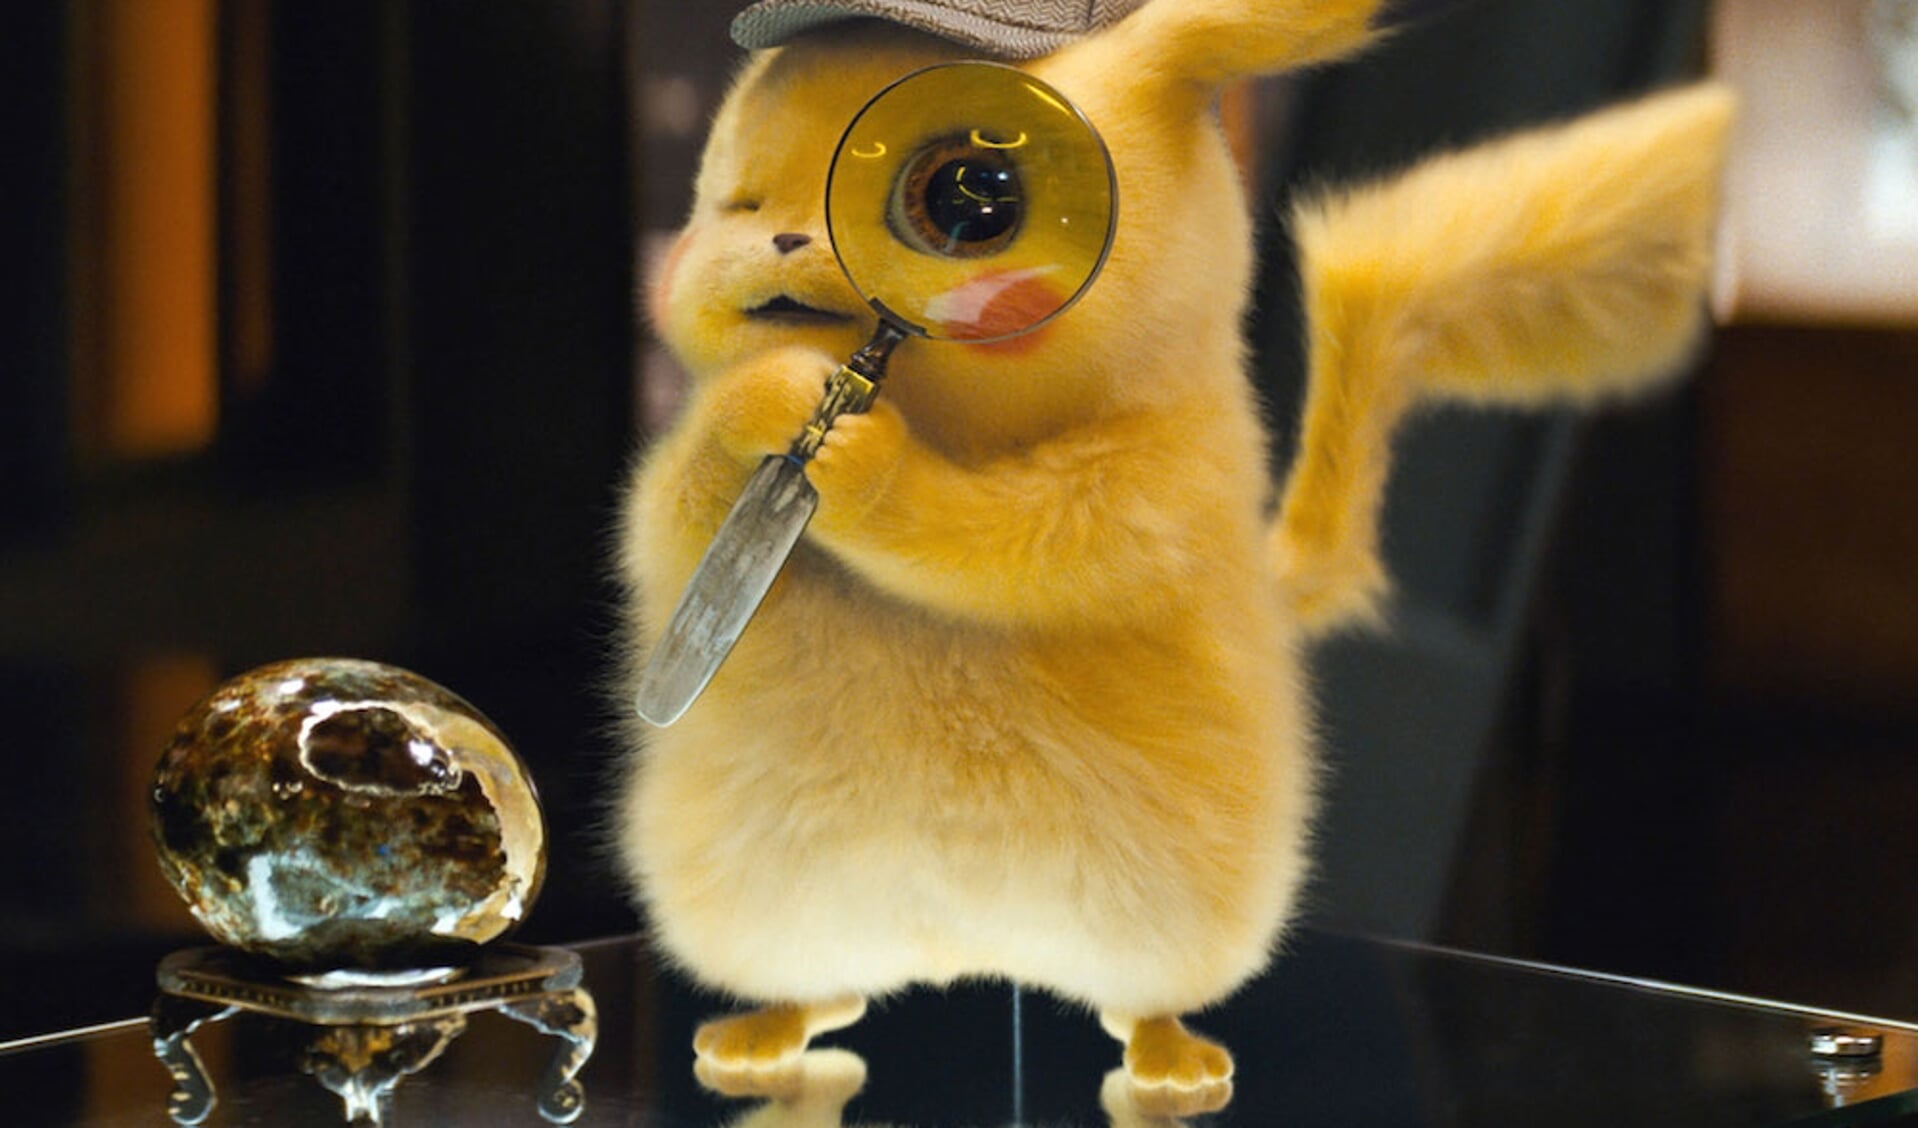 Detective Pikachu is één van de films die komende week te zien is in Cinema Texel